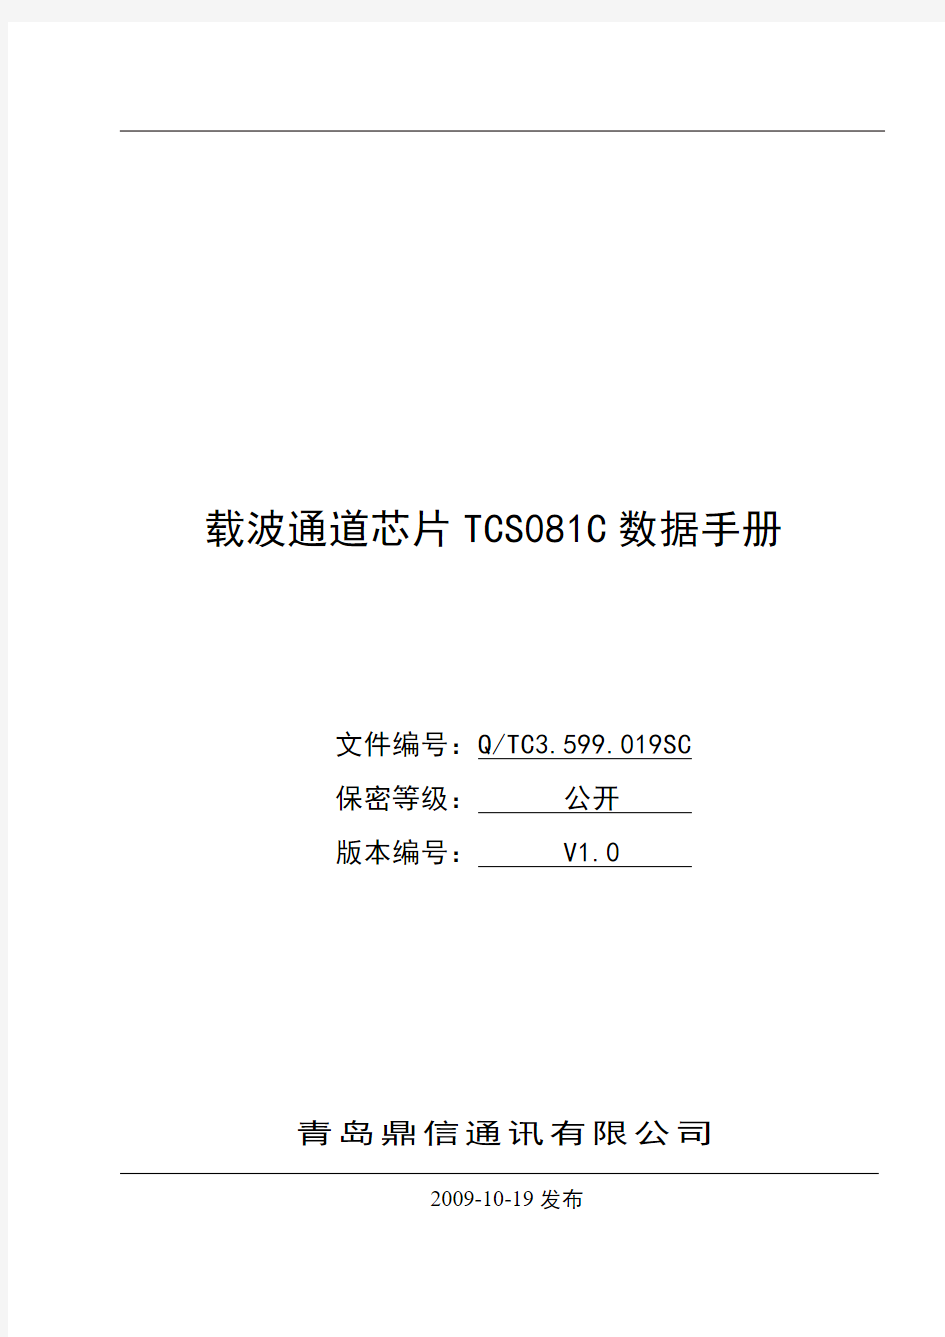 青岛鼎信载波芯片TCS081C数据手册V1.0